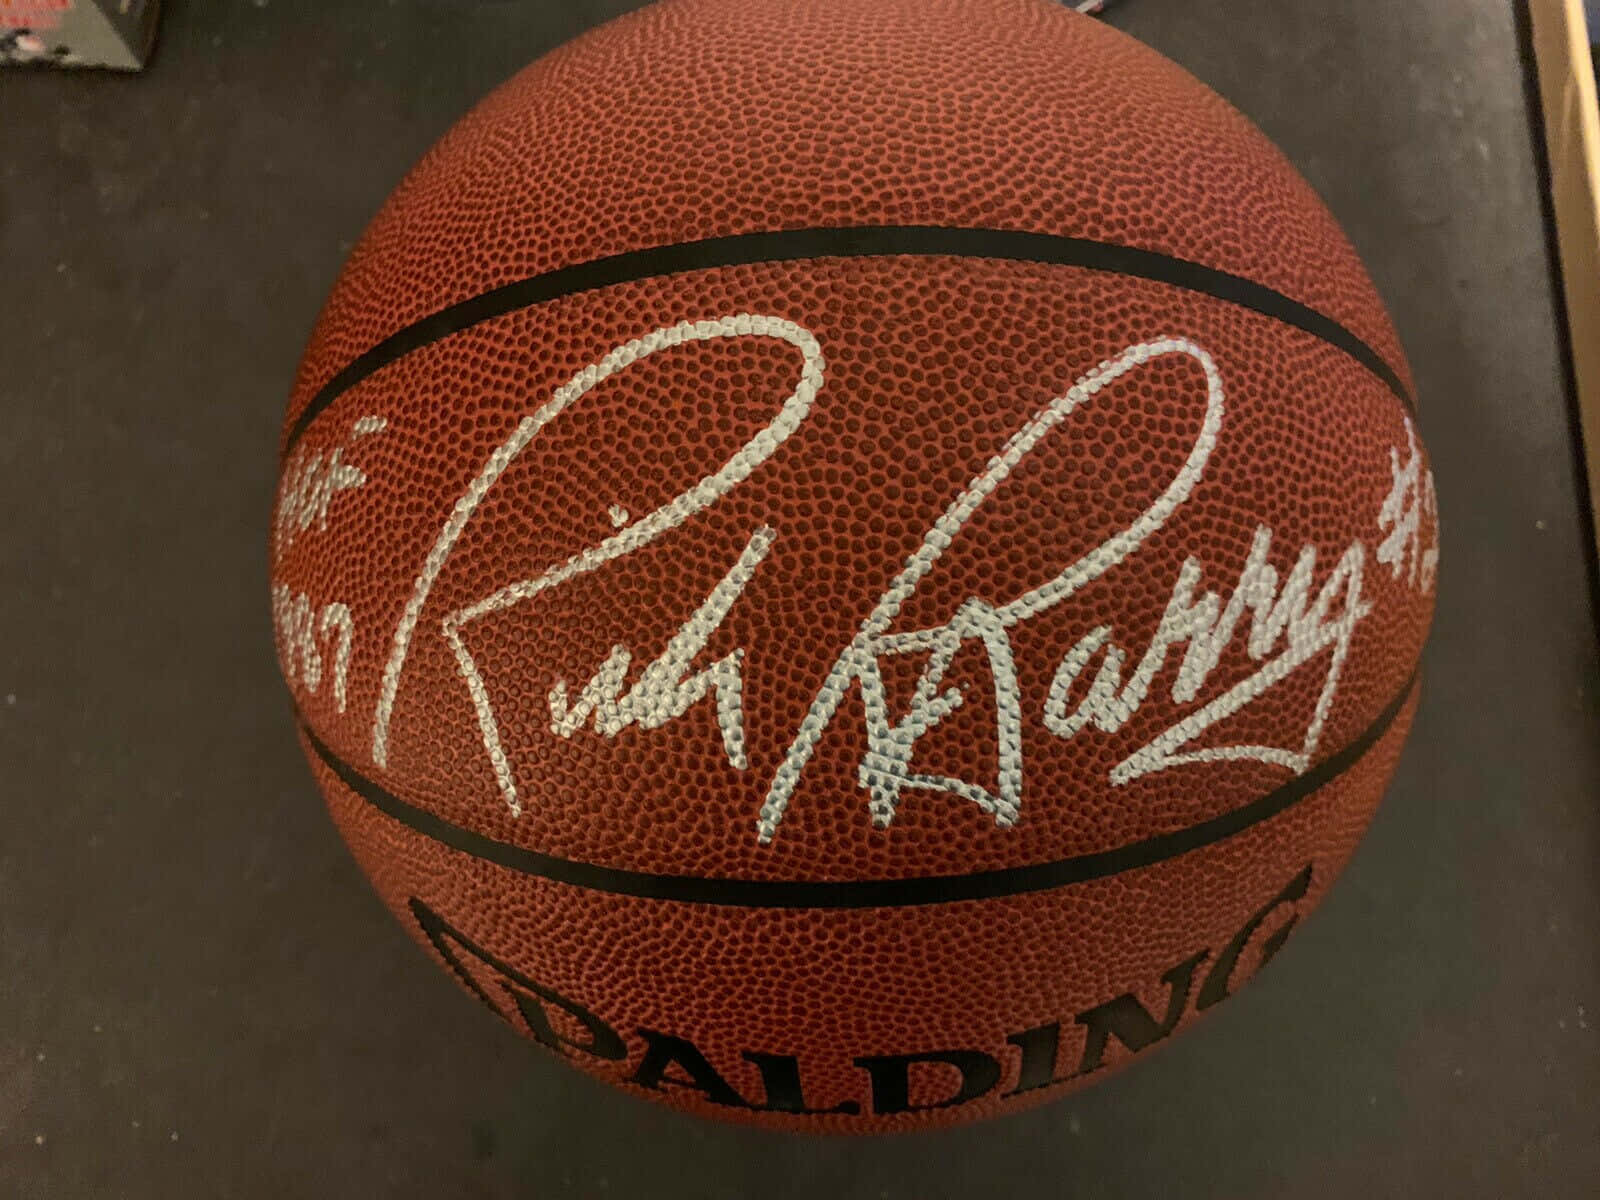 Rickbarry Signerade Spalding Basketboll. Wallpaper